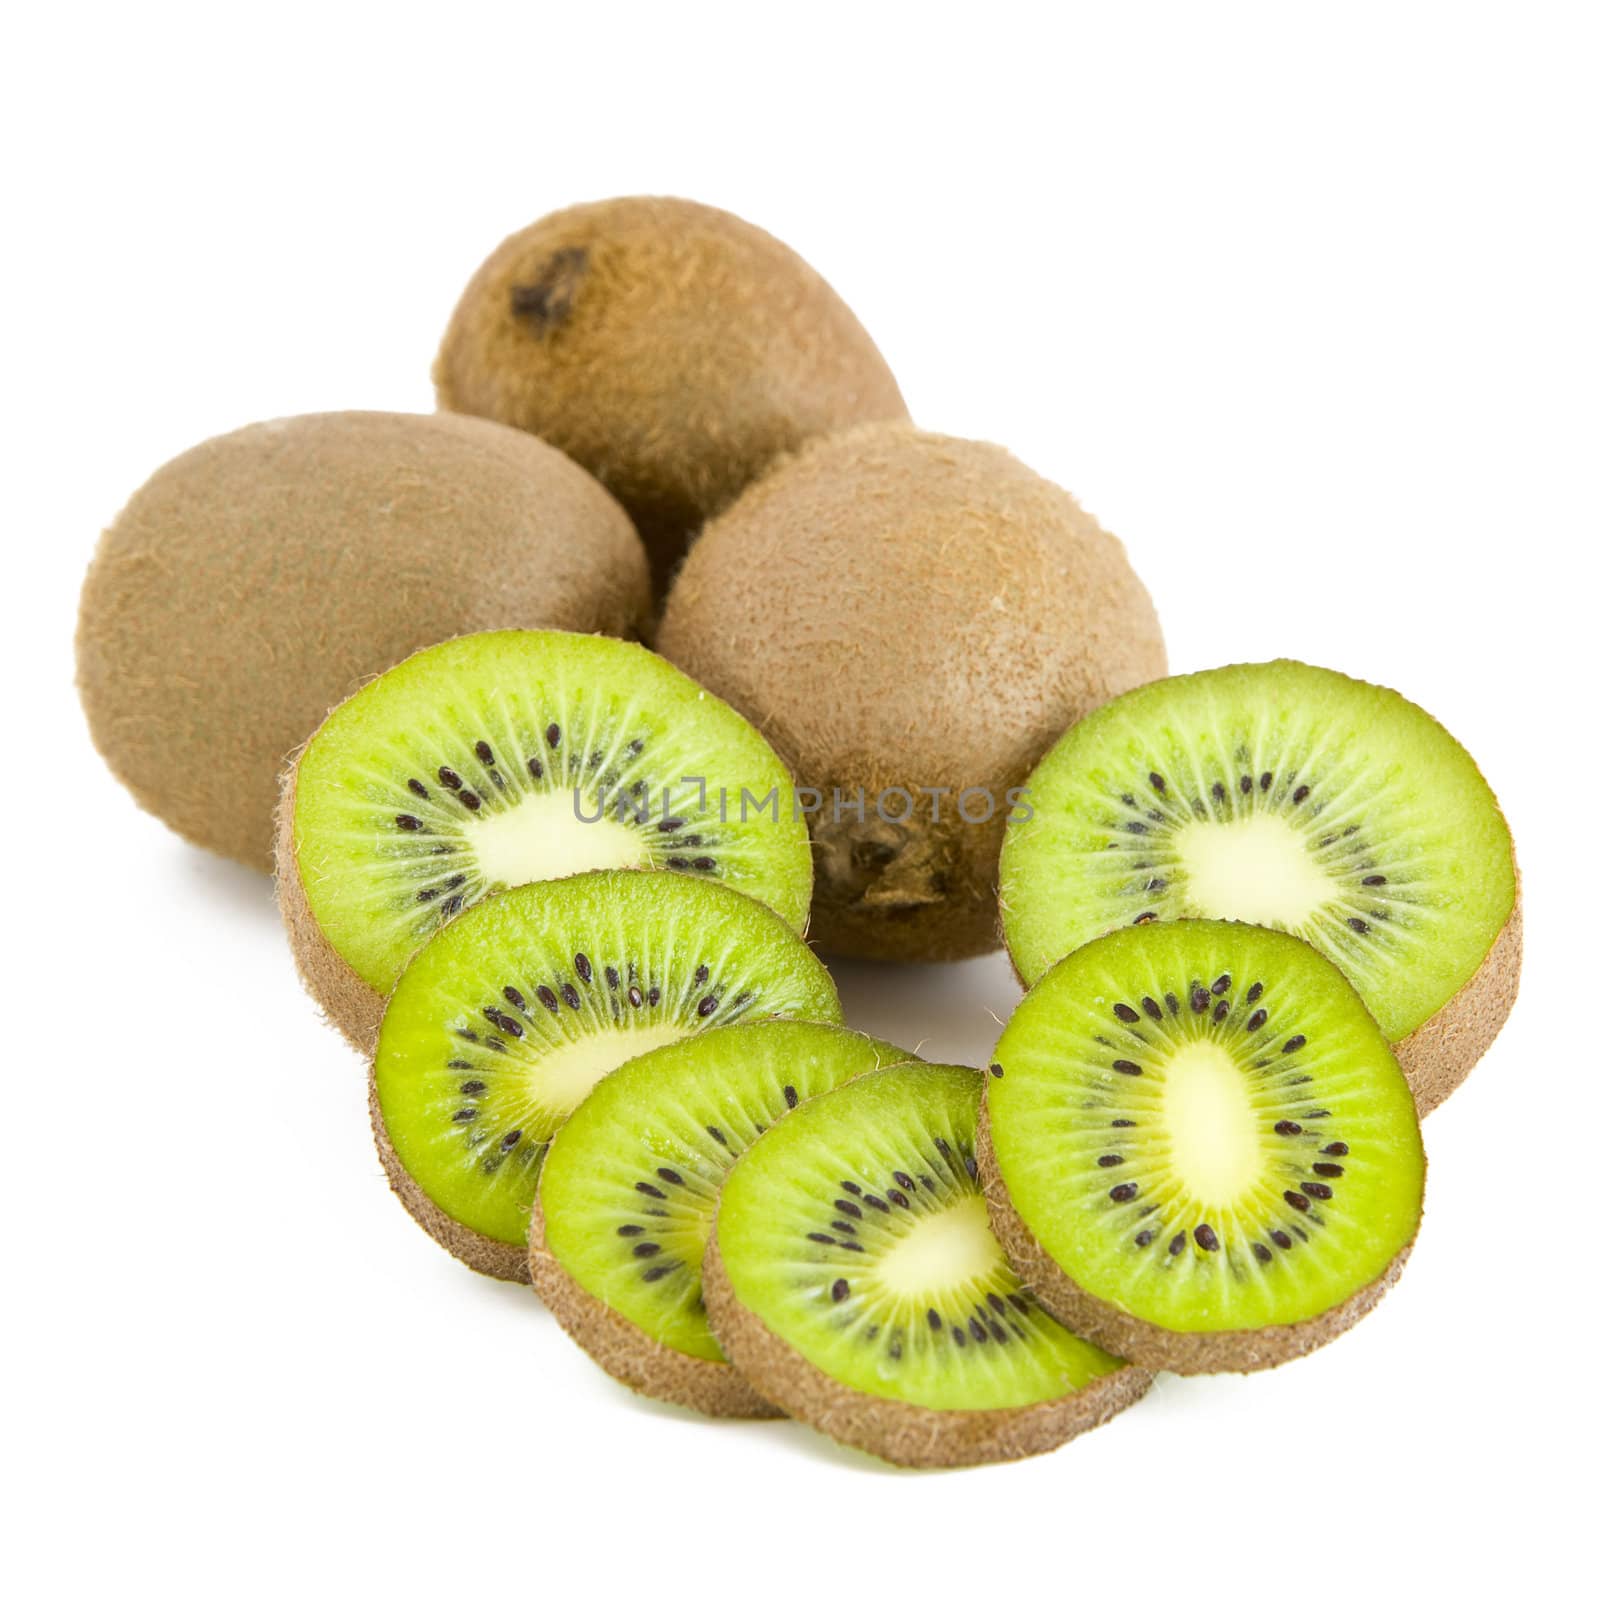 Kiwi fruits, slices by Gbuglok